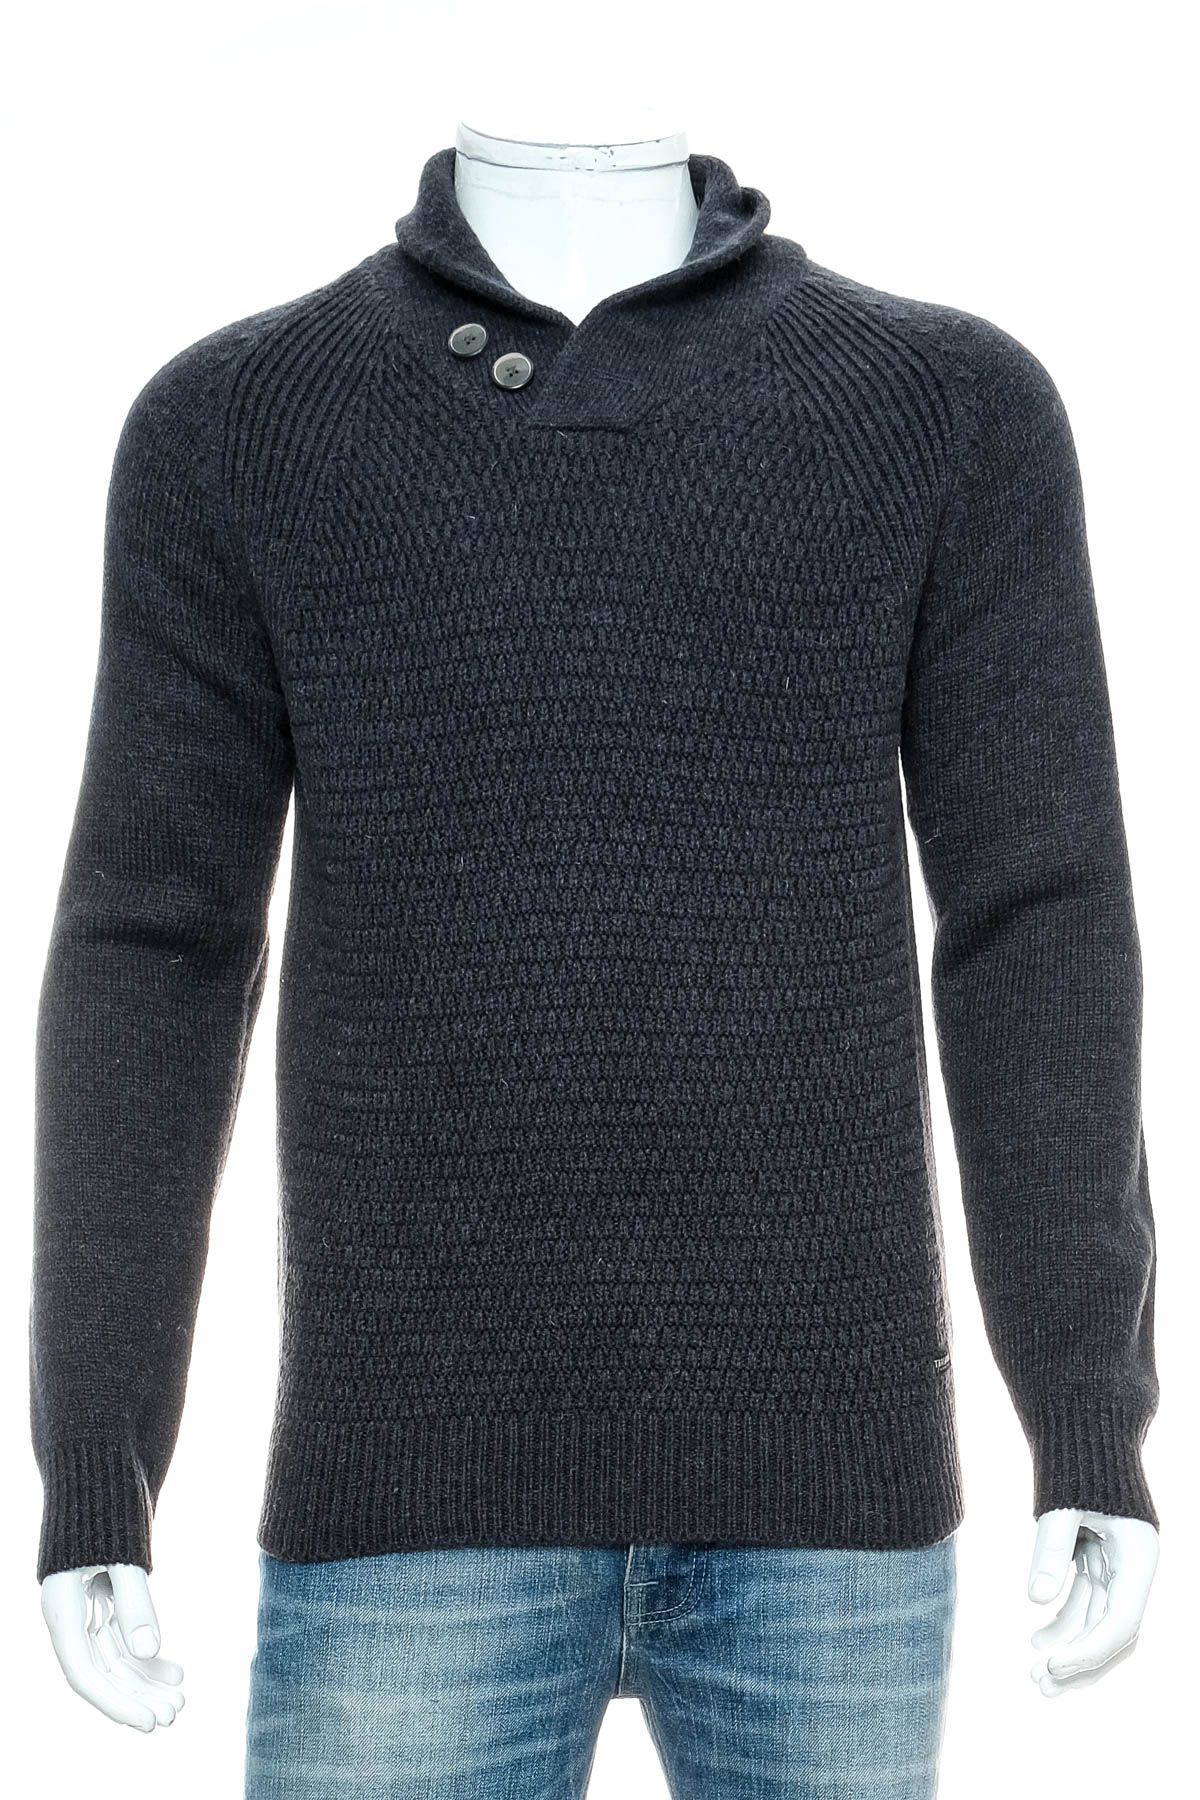 Men's sweater - Threadbare - 0